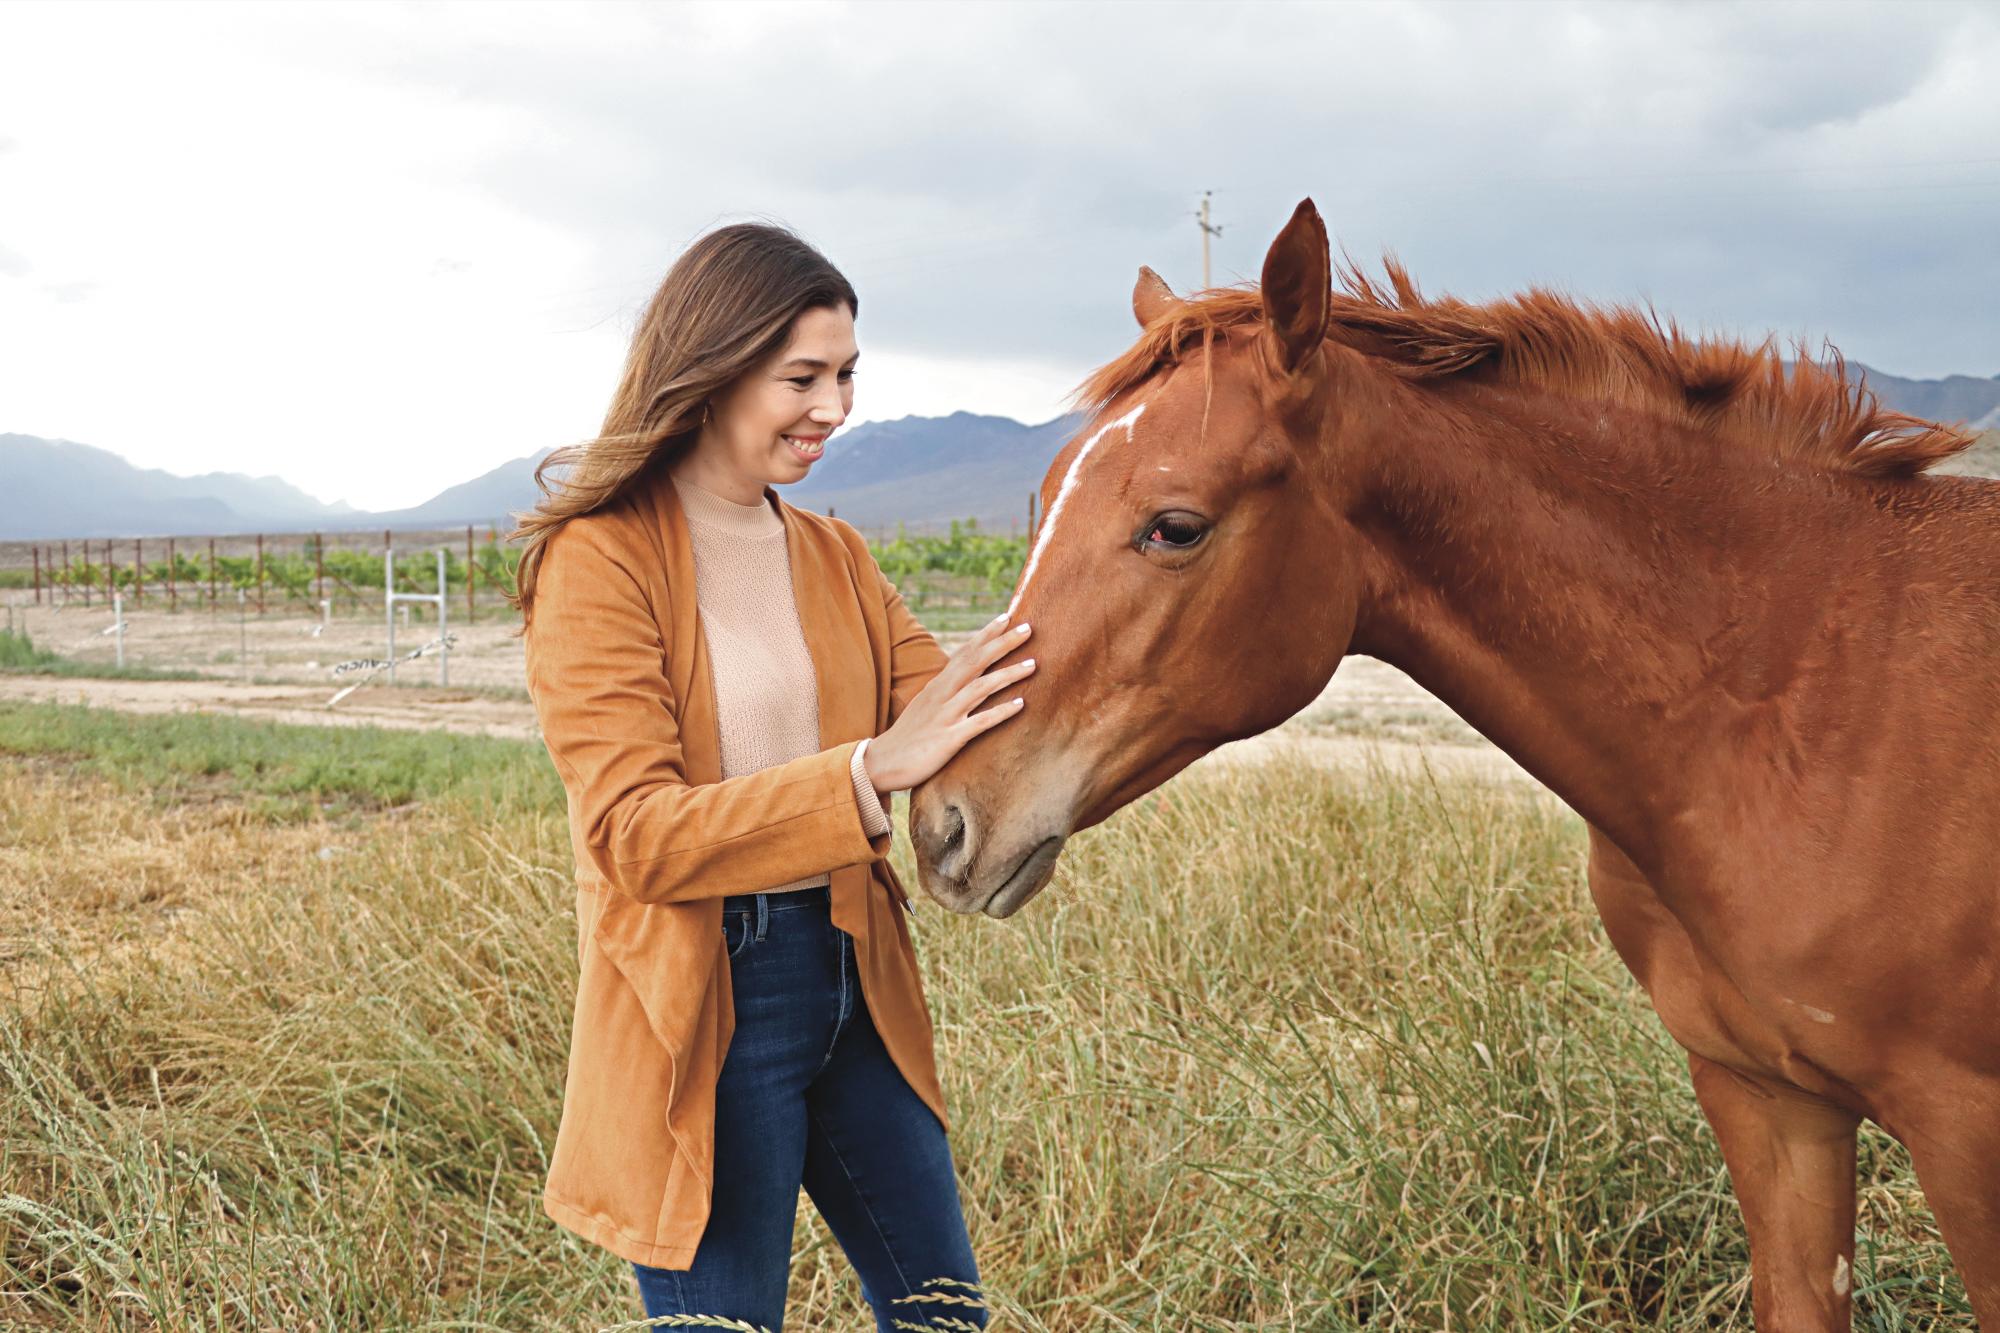 $!Desde su infancia, Roberta Ramón Treviño ha compartido momentos especiales con los caballos, lo que ha despertado un profundo amor por ellos.